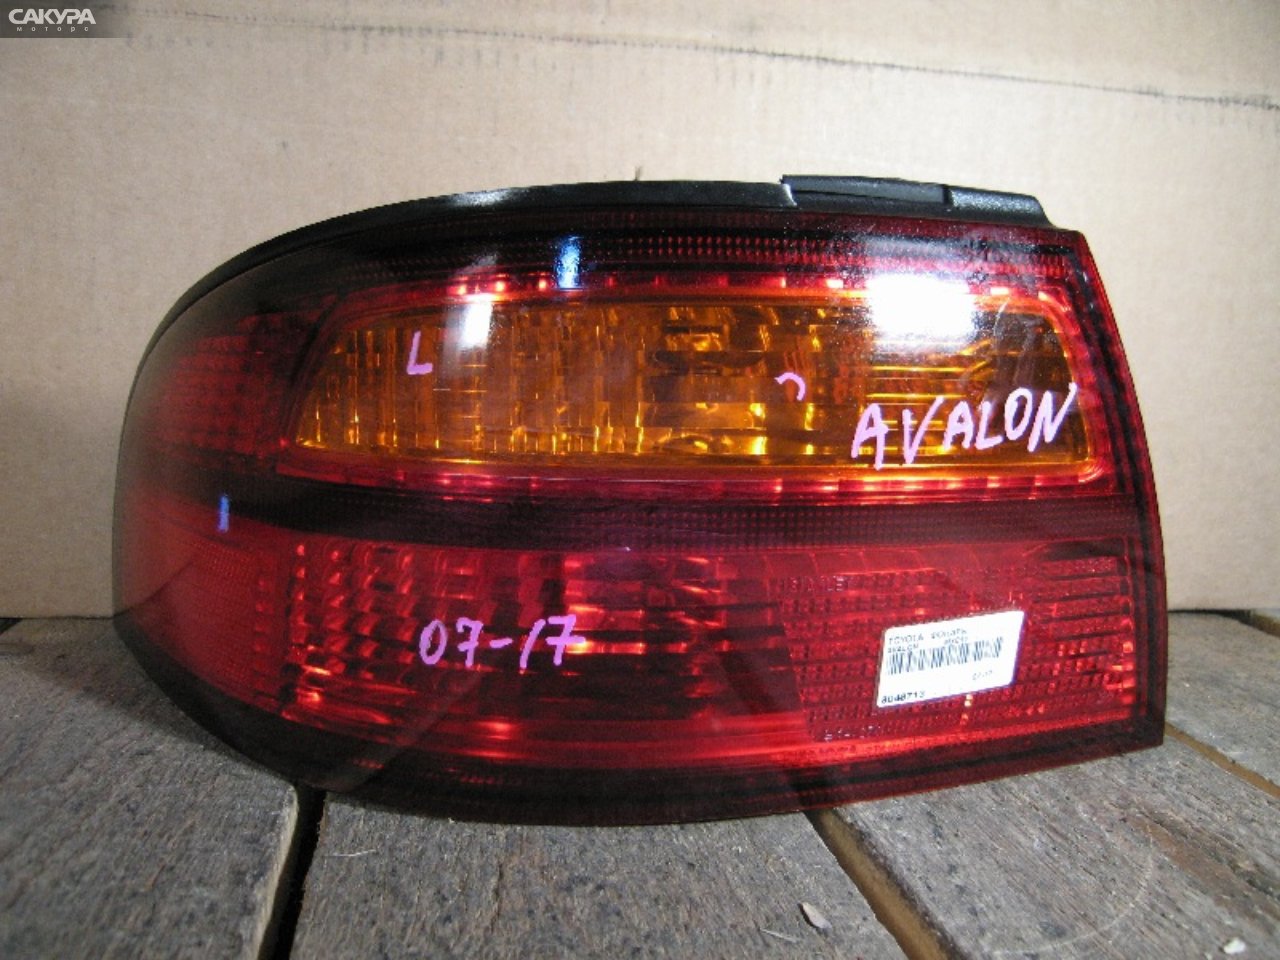 Фонарь стоп-сигнала левый Toyota Avalon MCX10 07-17: купить в Сакура Абакан.